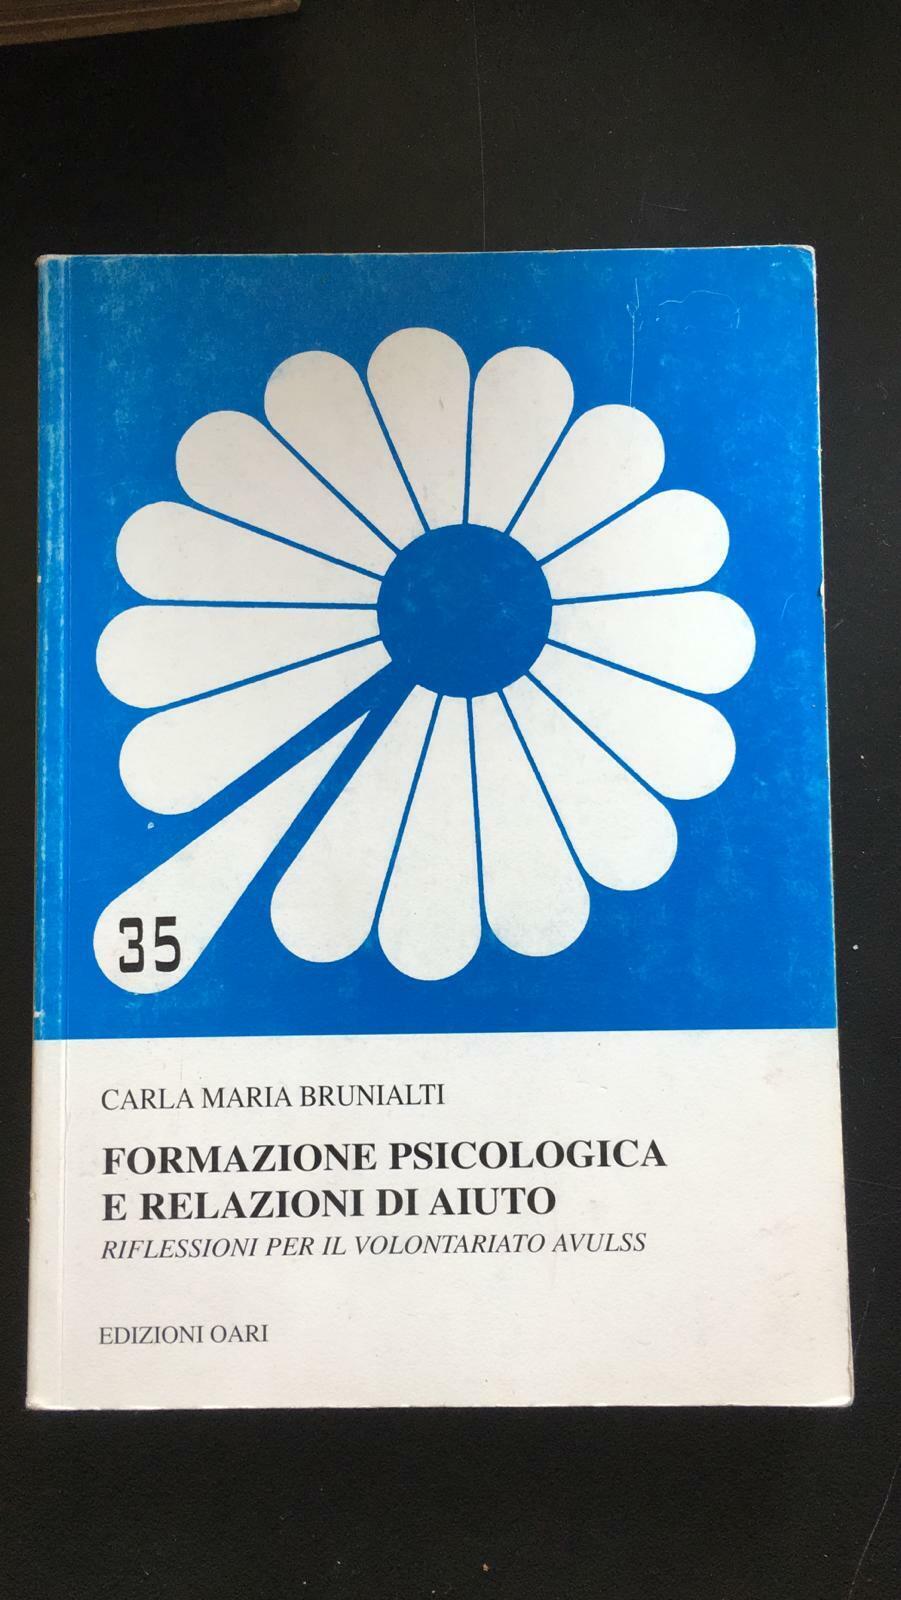 Formazione psicologica e relazioni di aiuto - Carla Maria Brunialti,  2007 - P